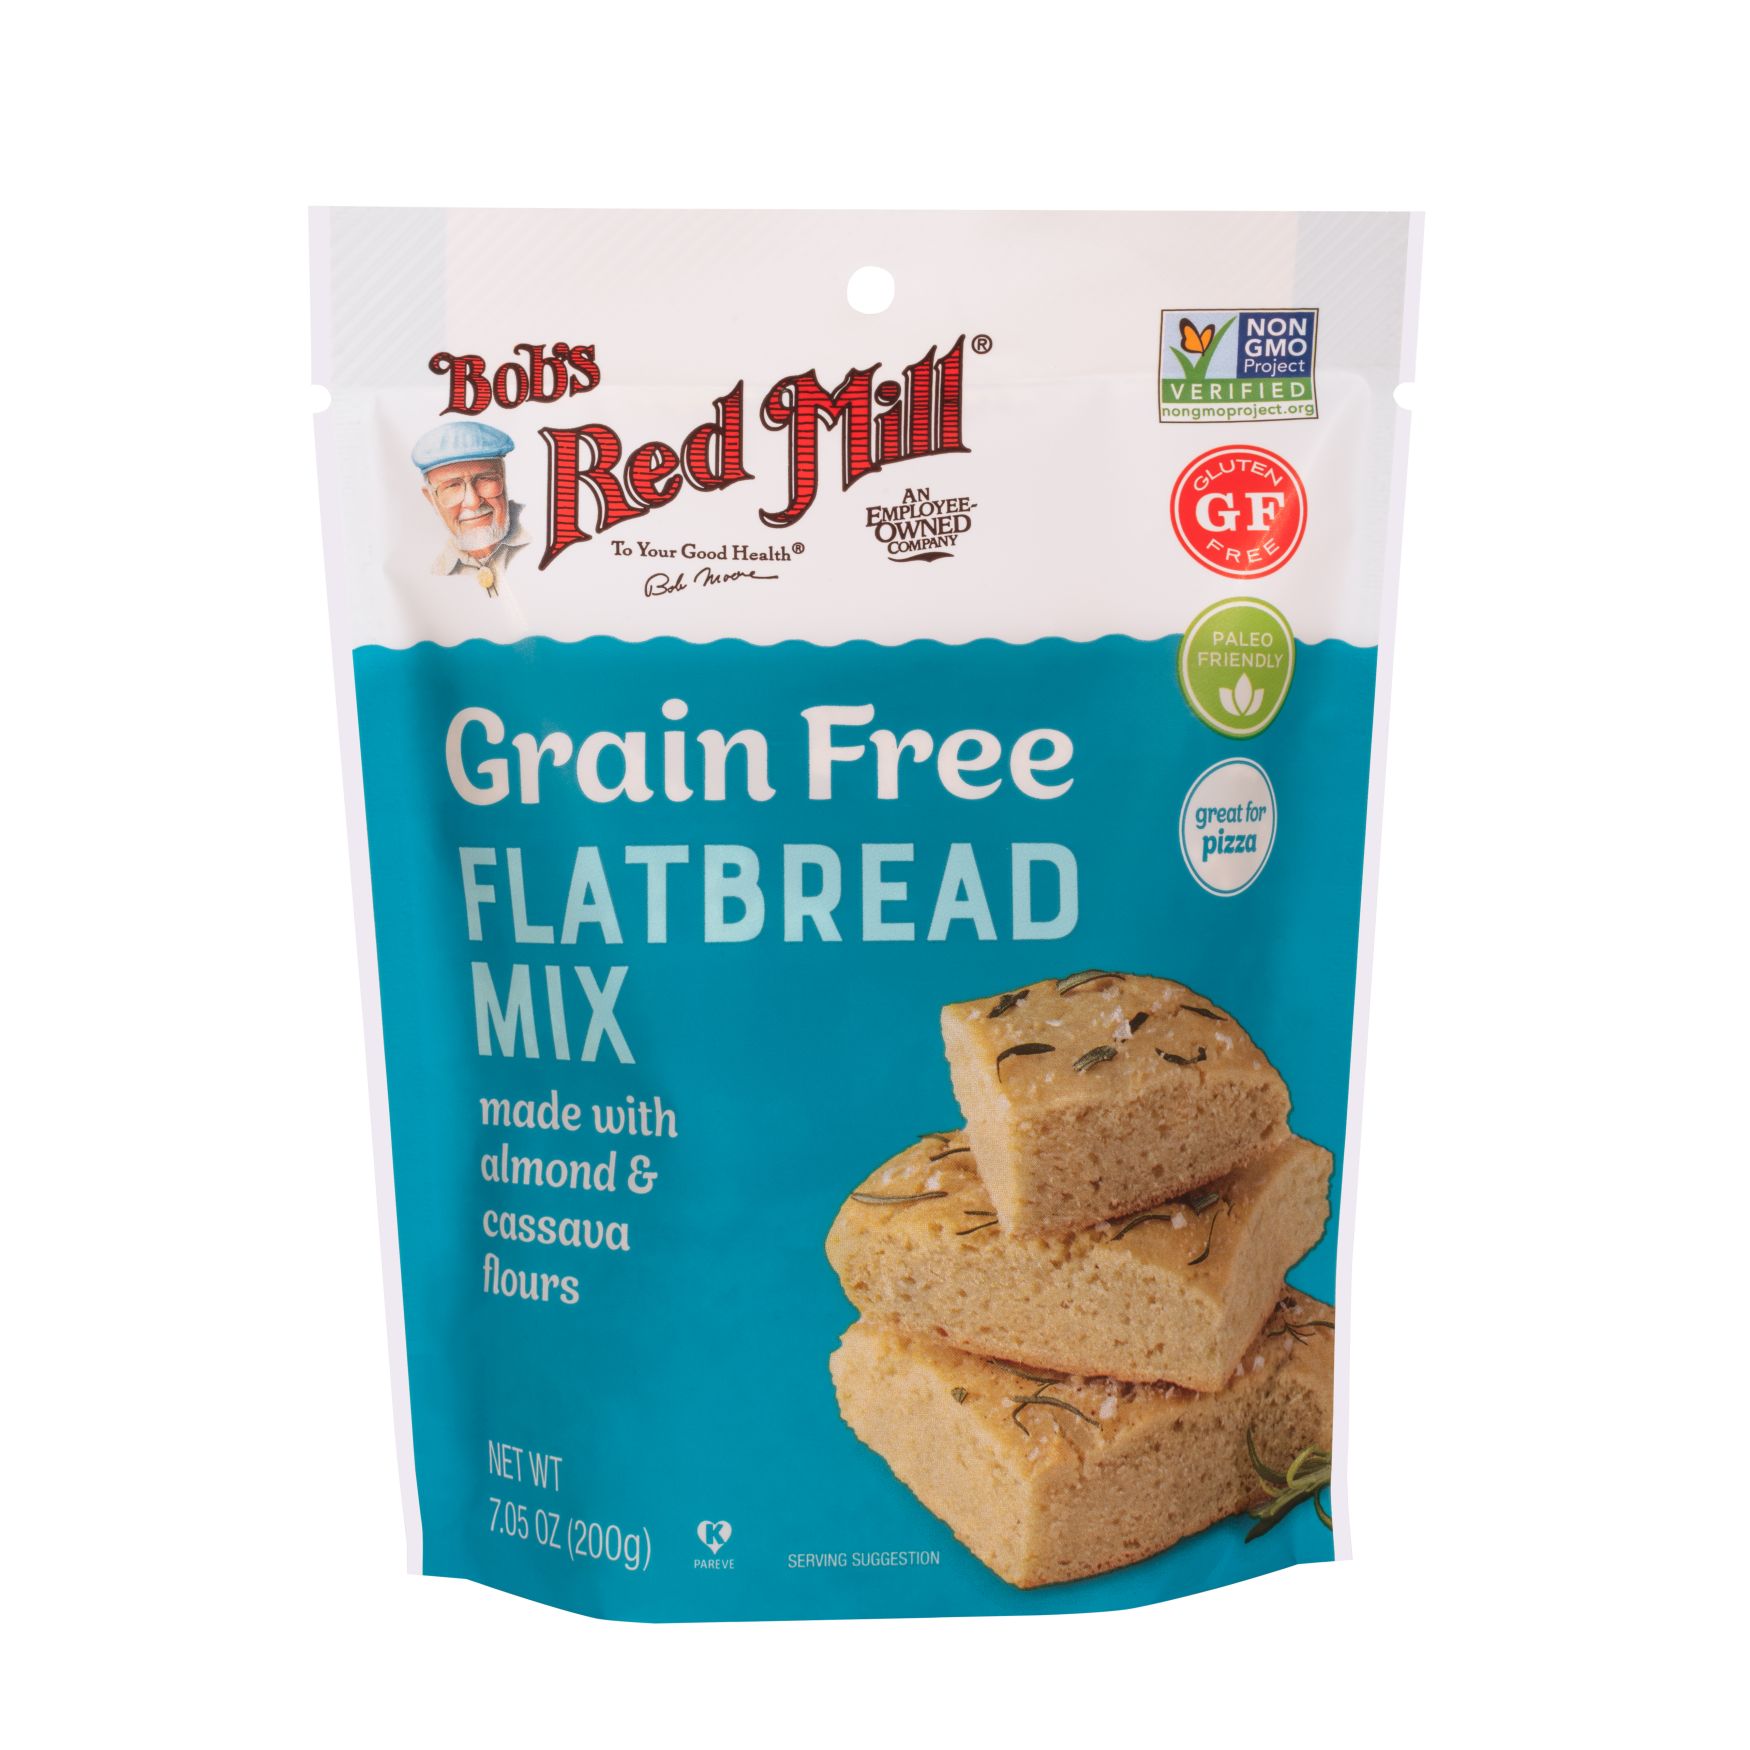 etage lette tæerne Grain Free Flatbread Mix :: Bob's Red Mill Natural Foods